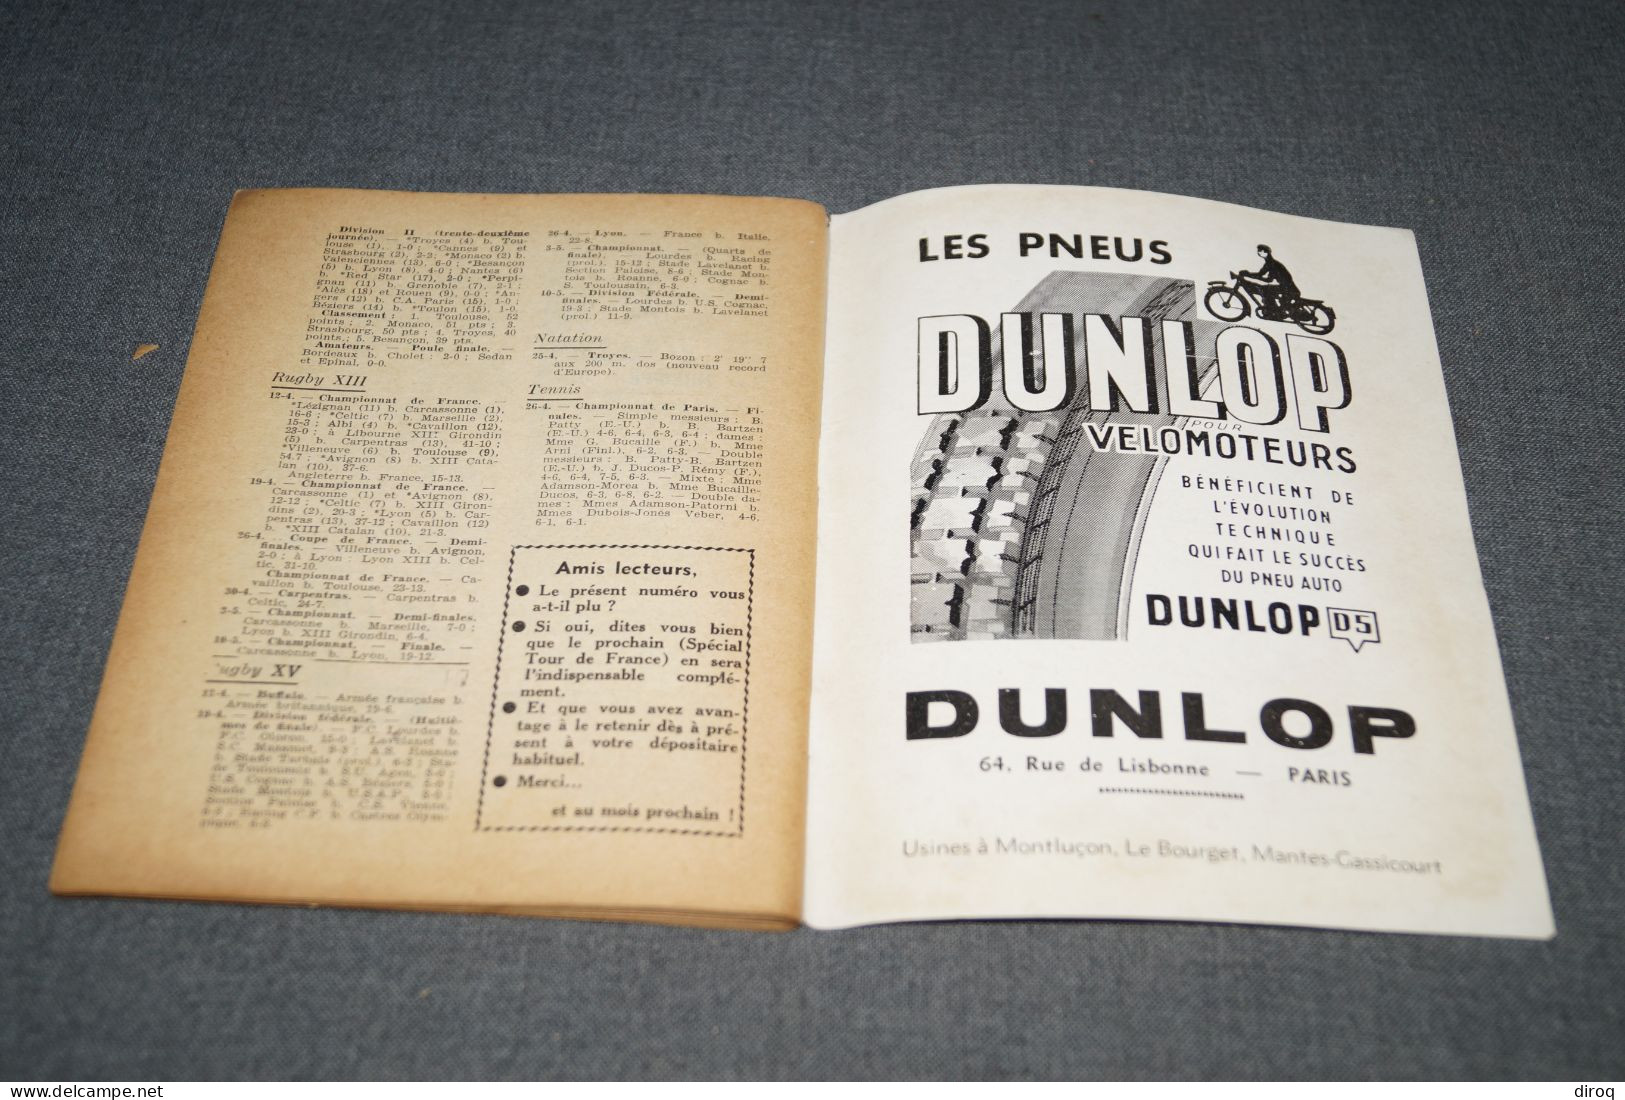 Tour de France,sport sélection,1953,complet 96 pages,ancien,complet,18 Cm. sur 13,5 Cm.